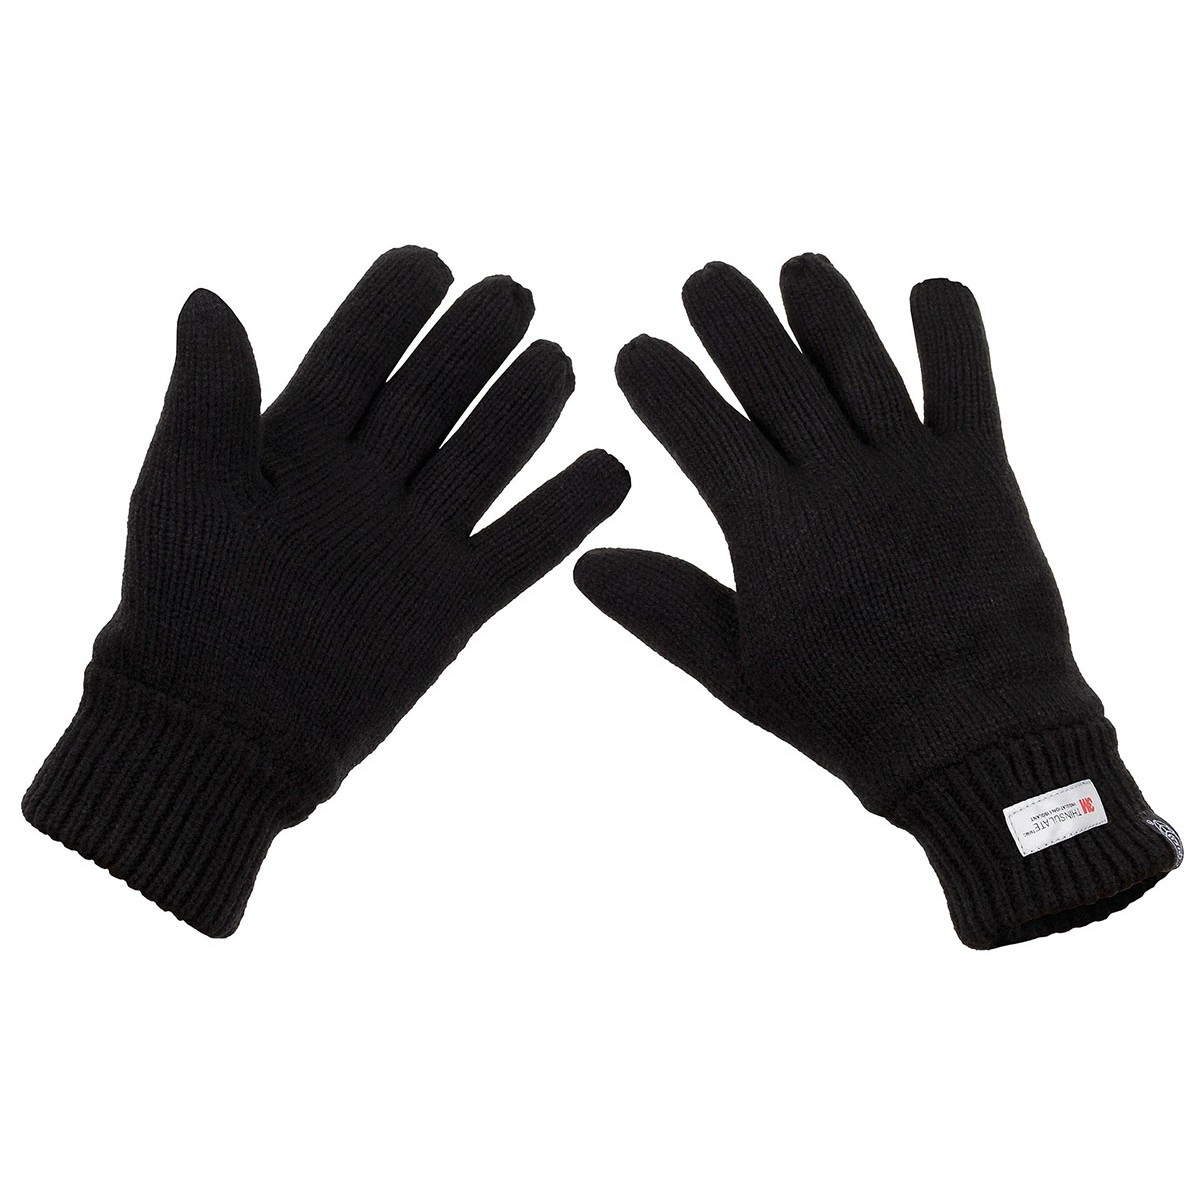 Pletené rukavice zateplené MFH Thinsulate - černé, XL